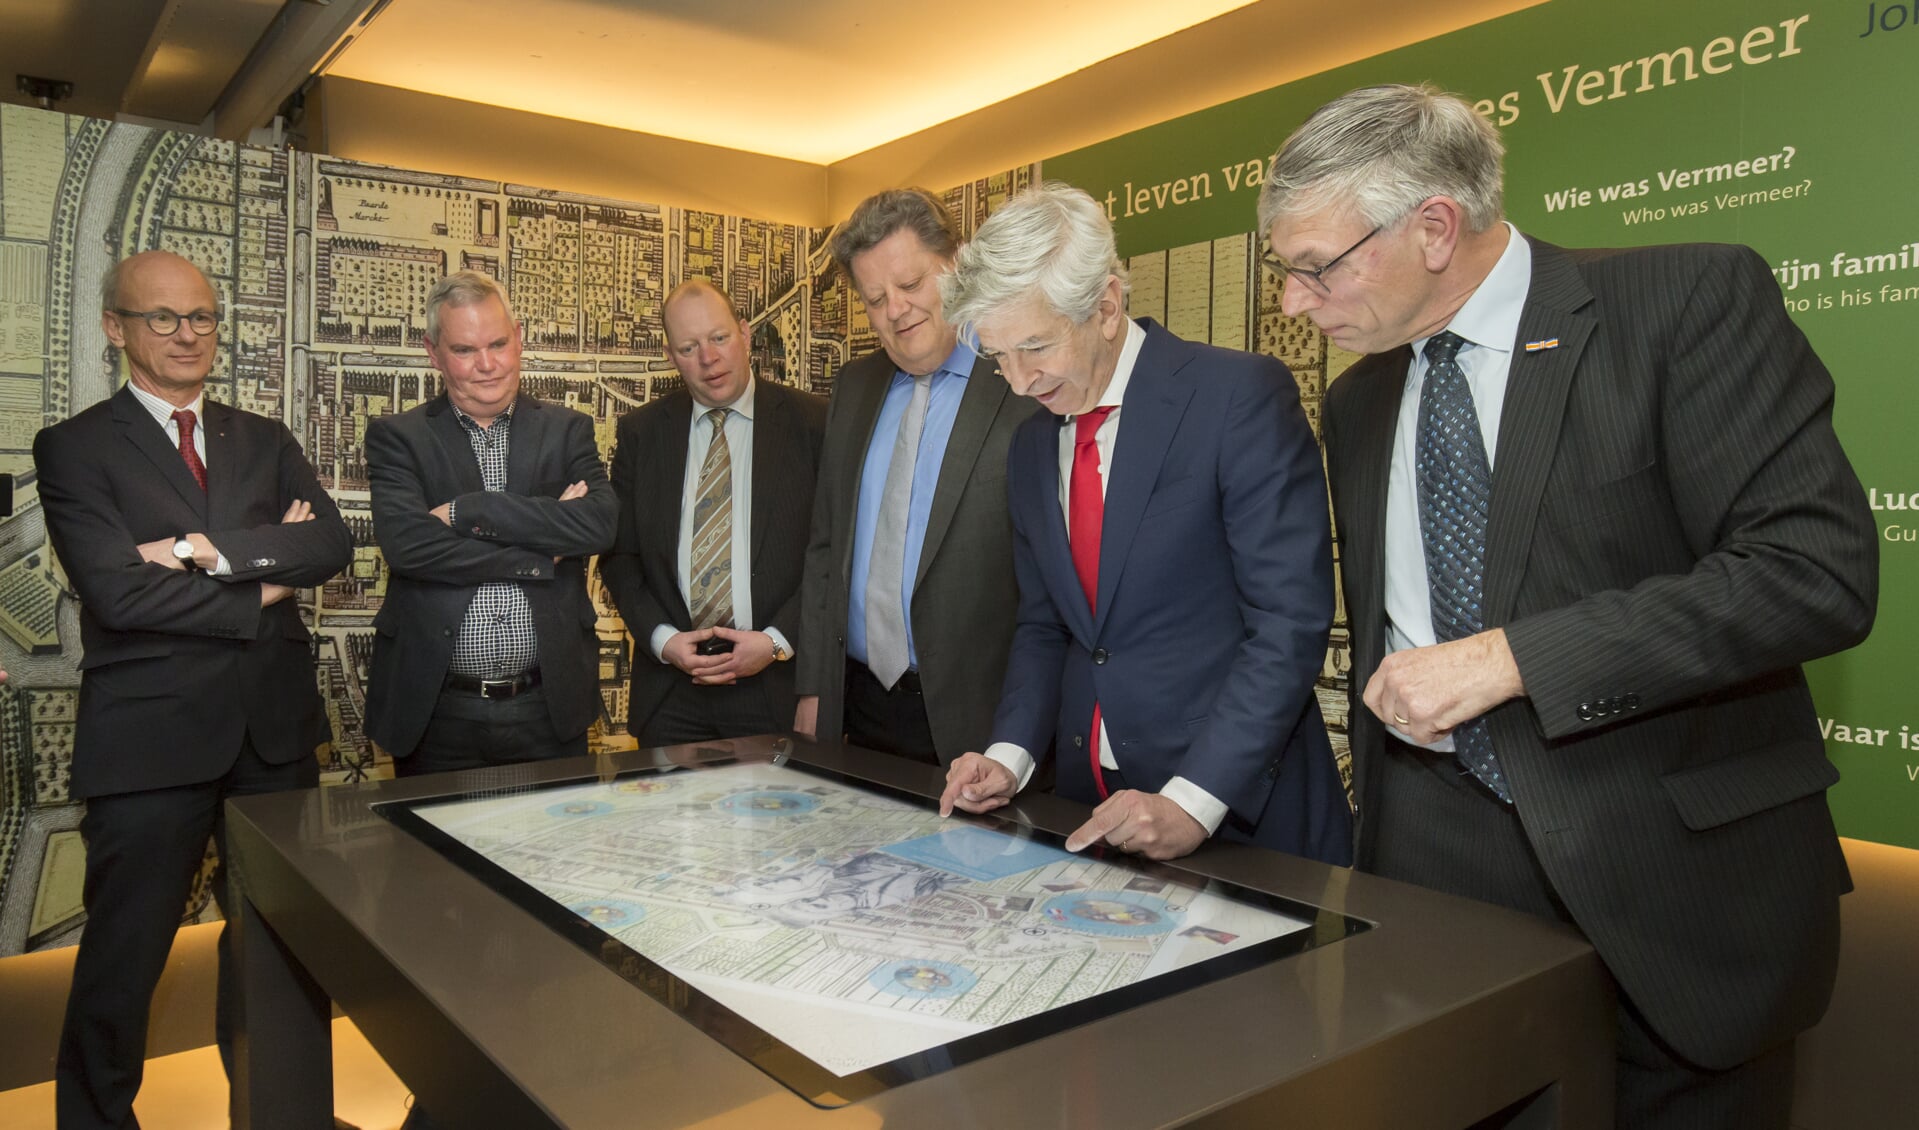 Christiaan Baljé, Herman Weyers, Ronald Plasterk en Wim van Leeuwen bekijken de nieuwe multitouch-tafel. (foto: Thijs Tuurenhout)